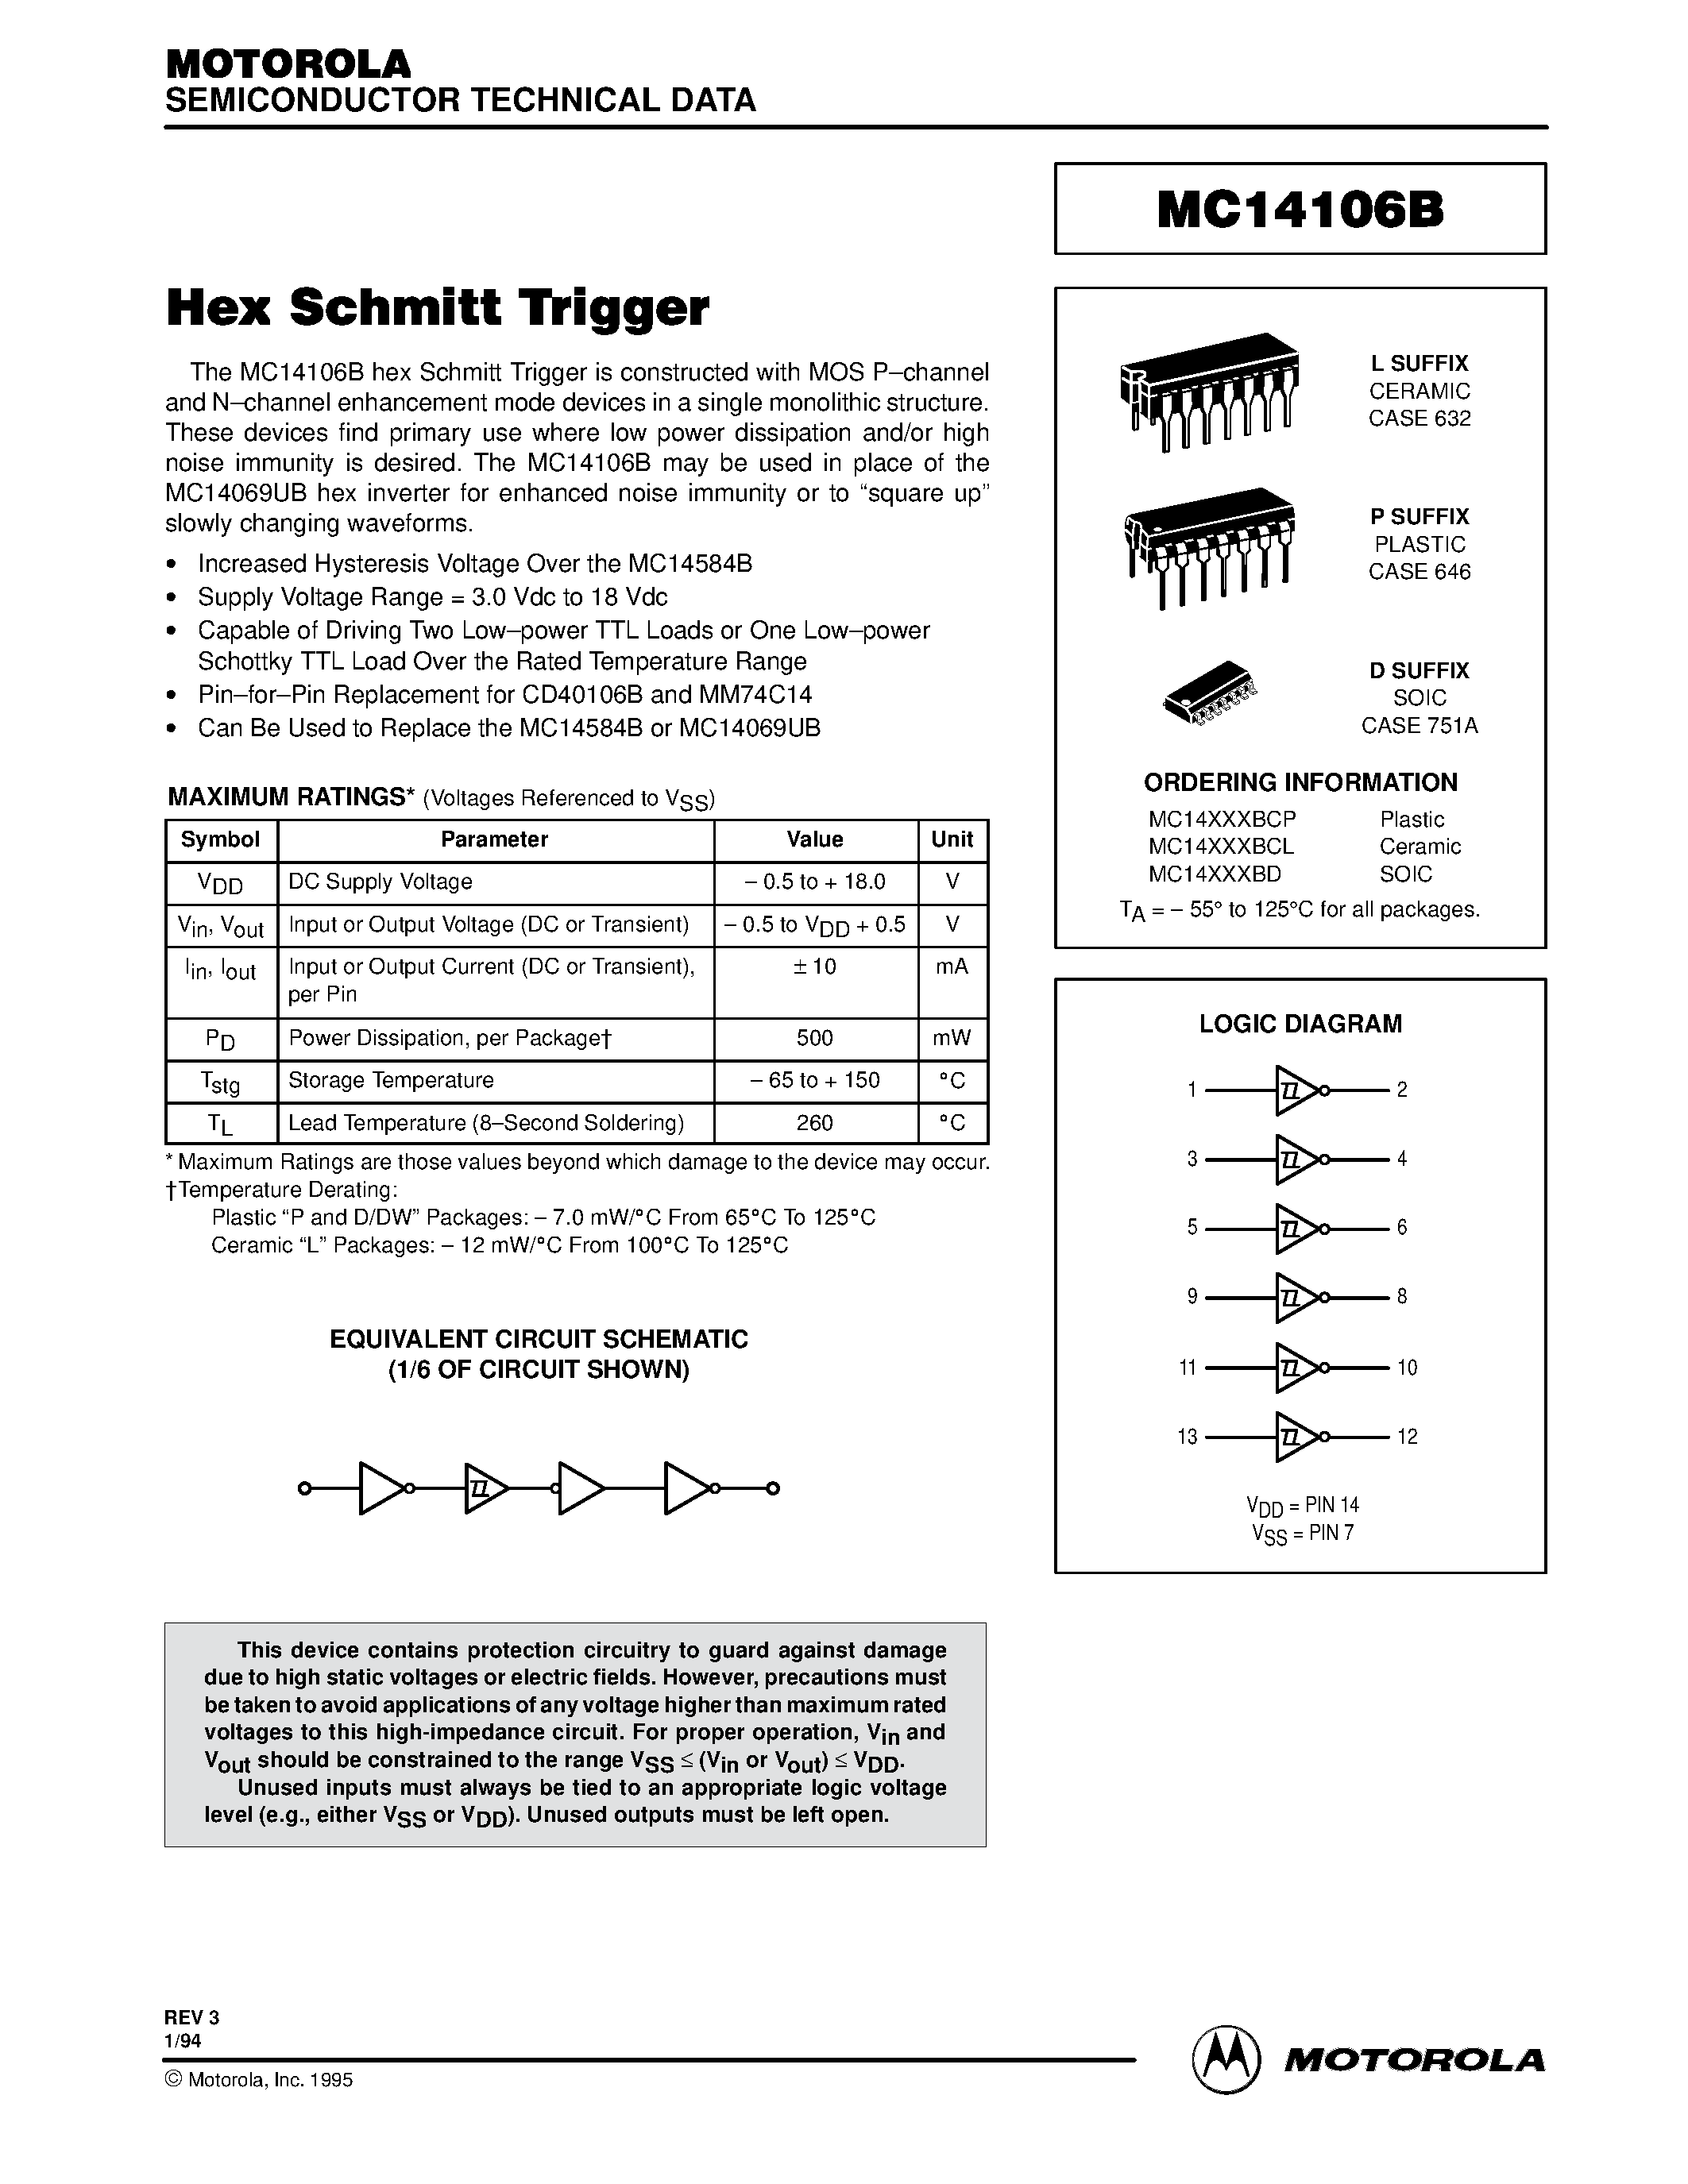 Datasheet MC14106BCP - Hex Schmitt Trigger page 1